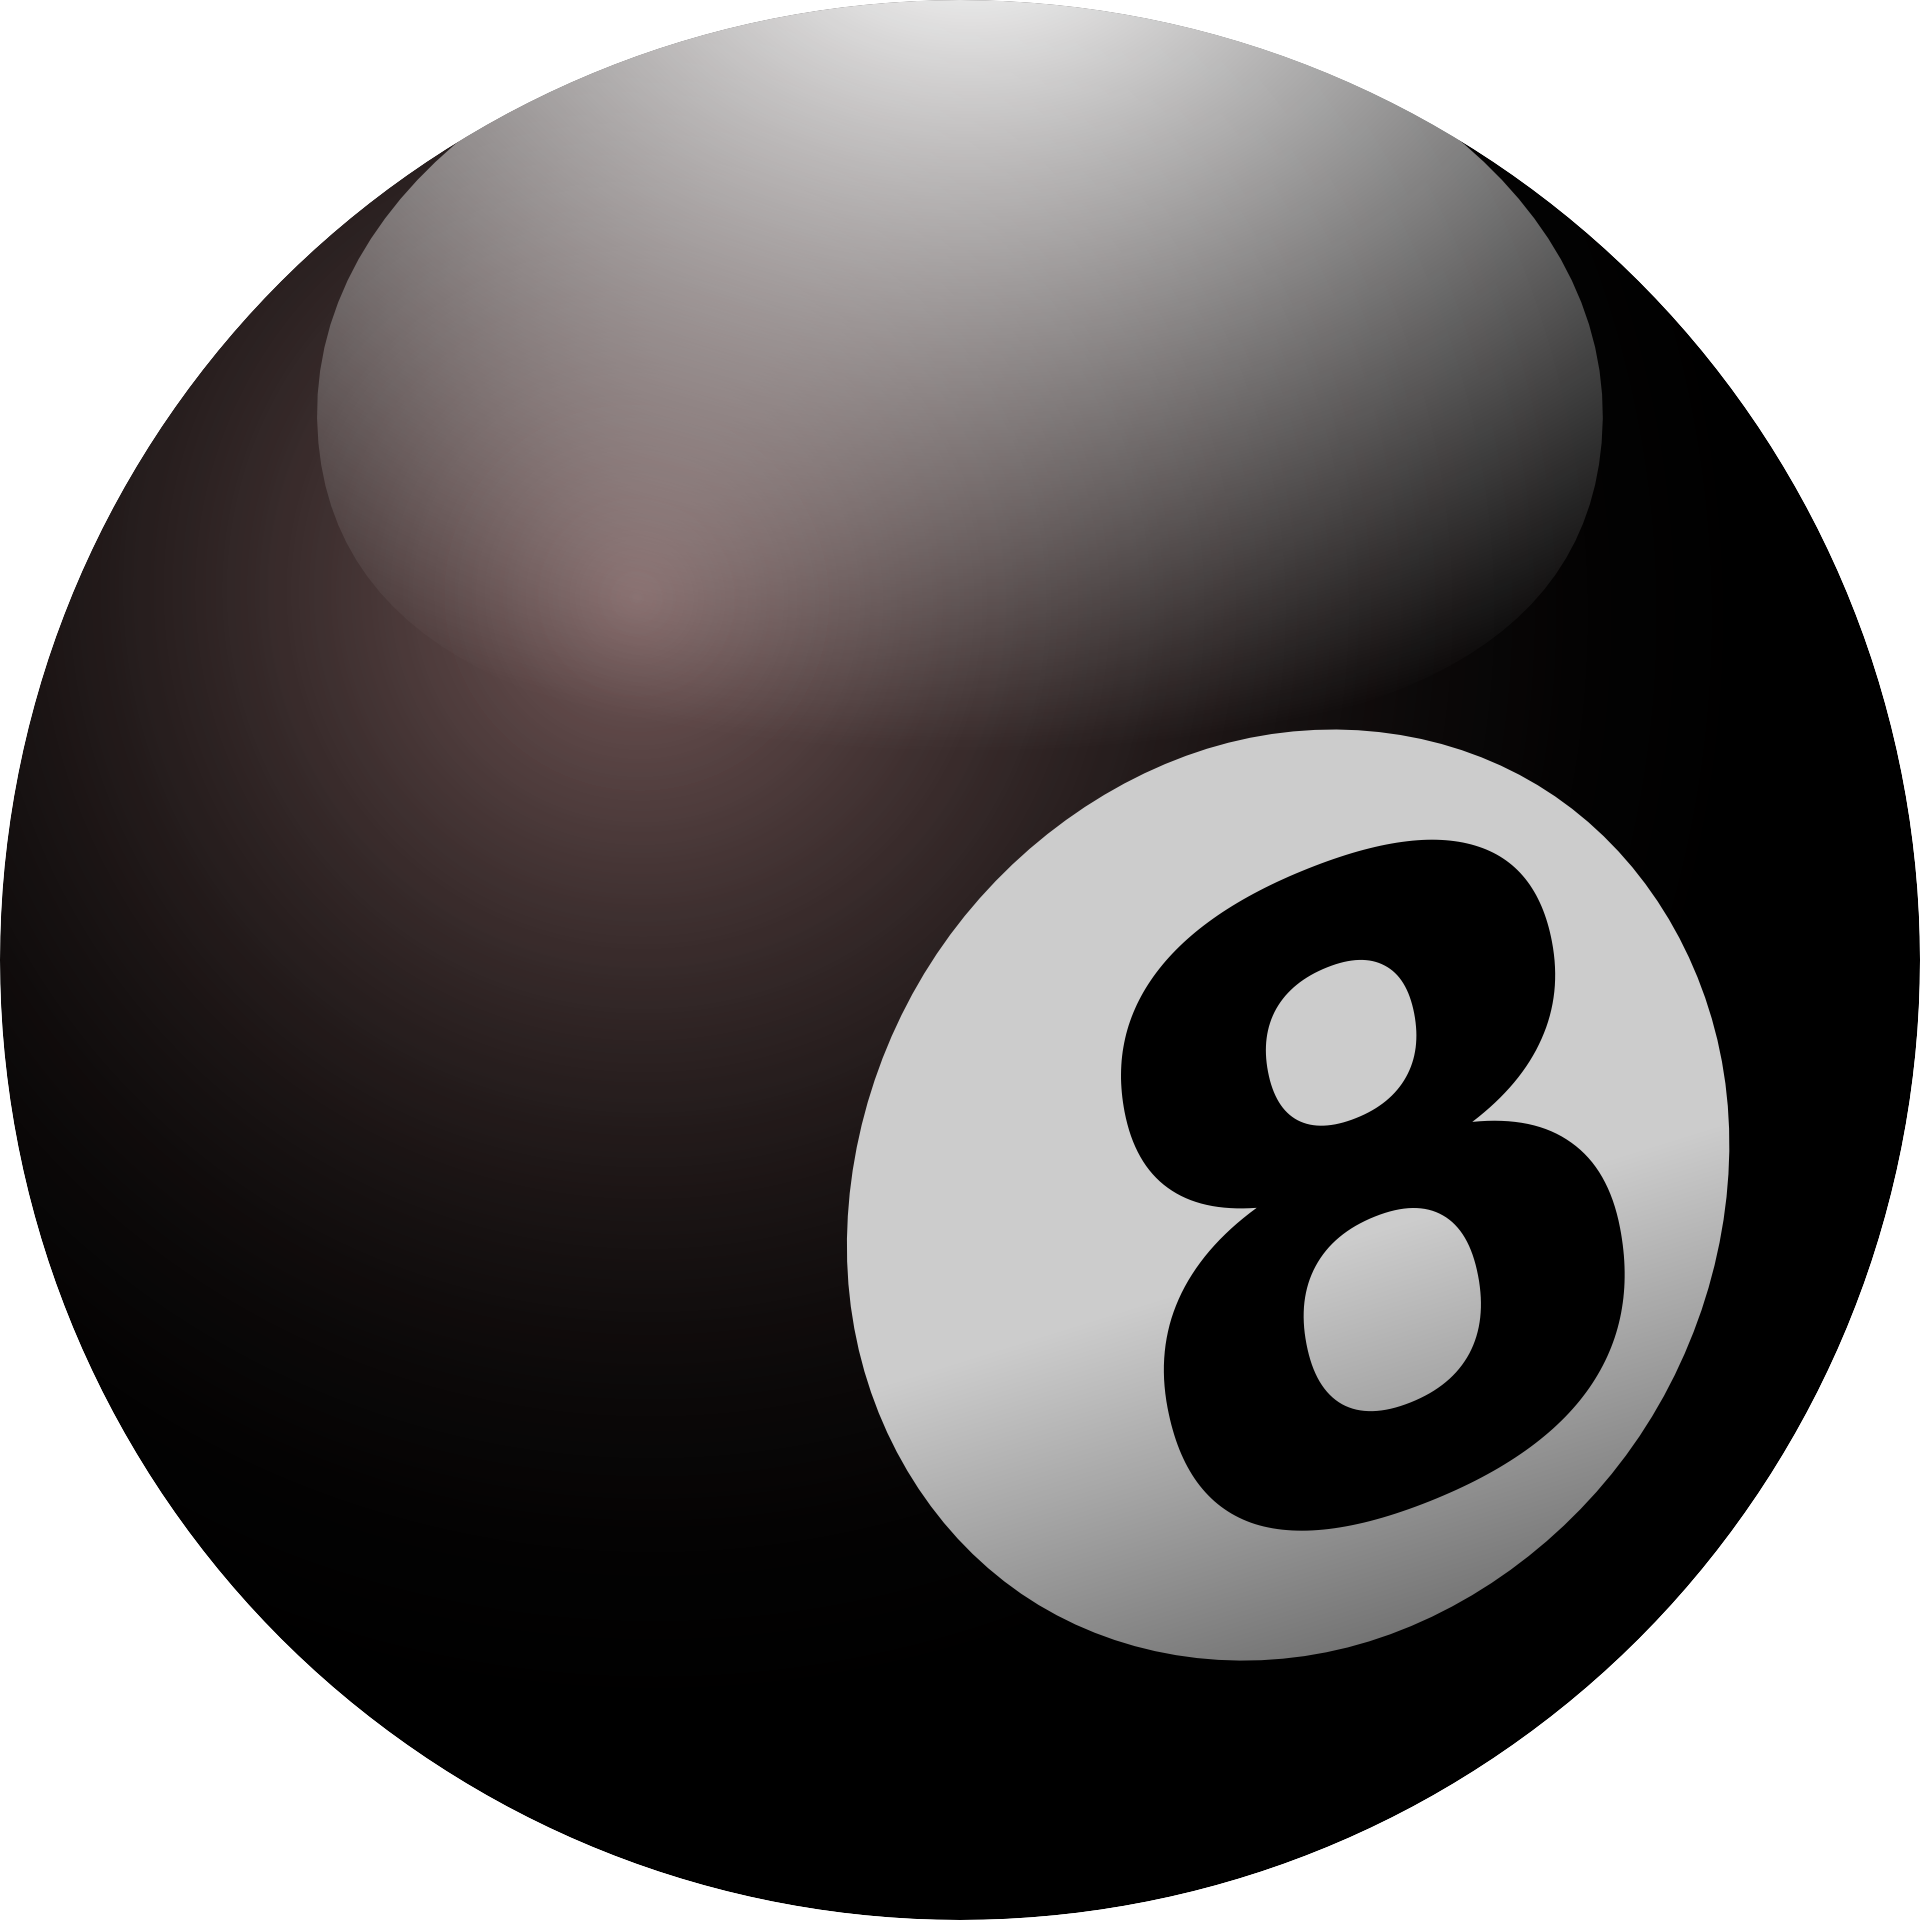 8 на черном шаре. Шар для бильярда 8. Бильярдный шар с цифрой 8. Черный бильярдный шар. Бильярдные шары.